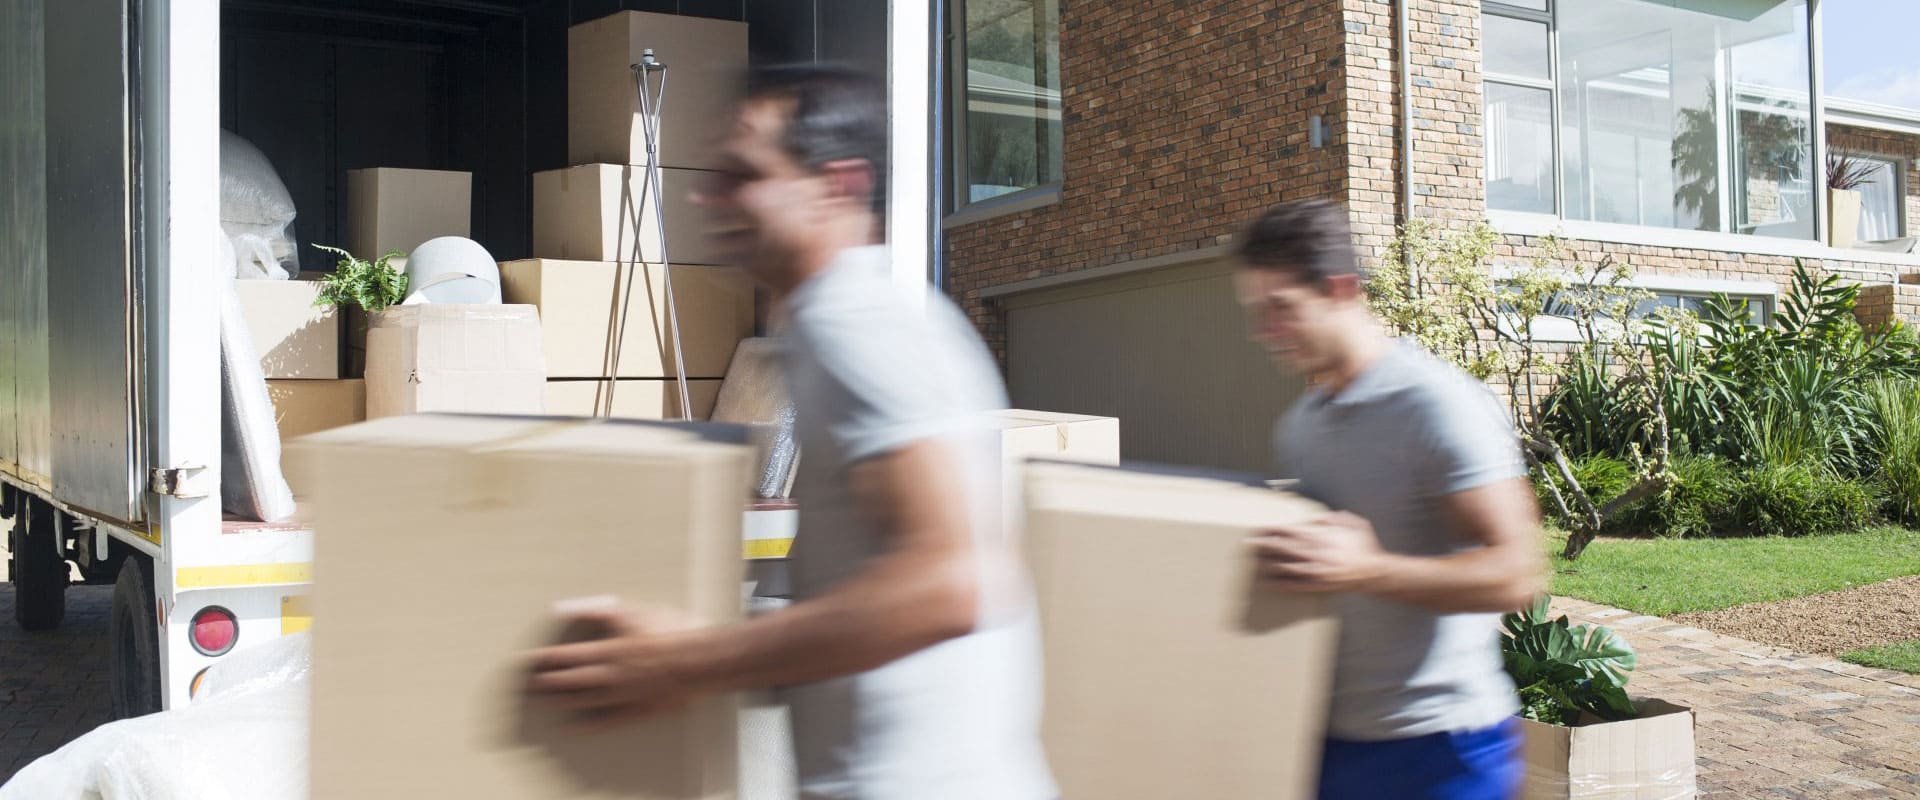 Hommes transportant des cartons de déménagement